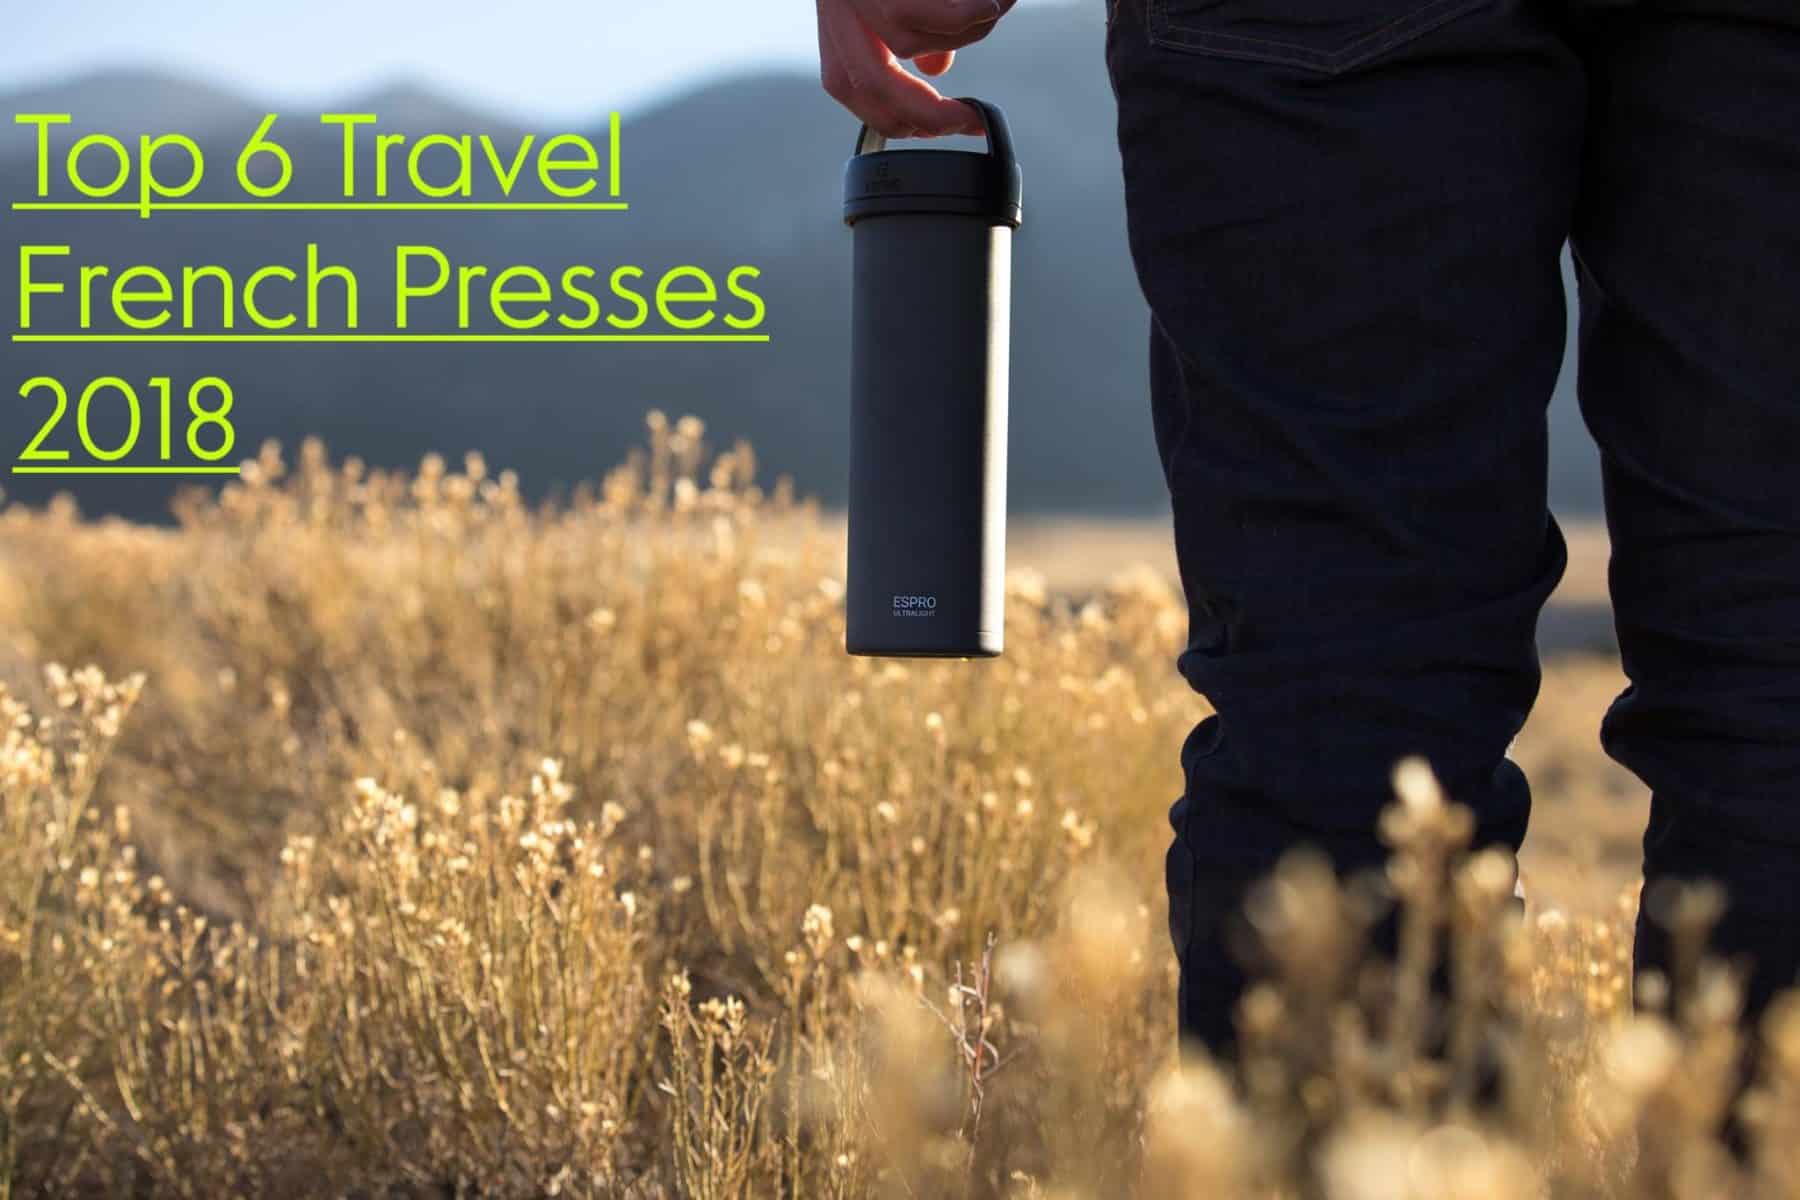 BruTek Stainless Travel Press - 16 oz - Double Shot